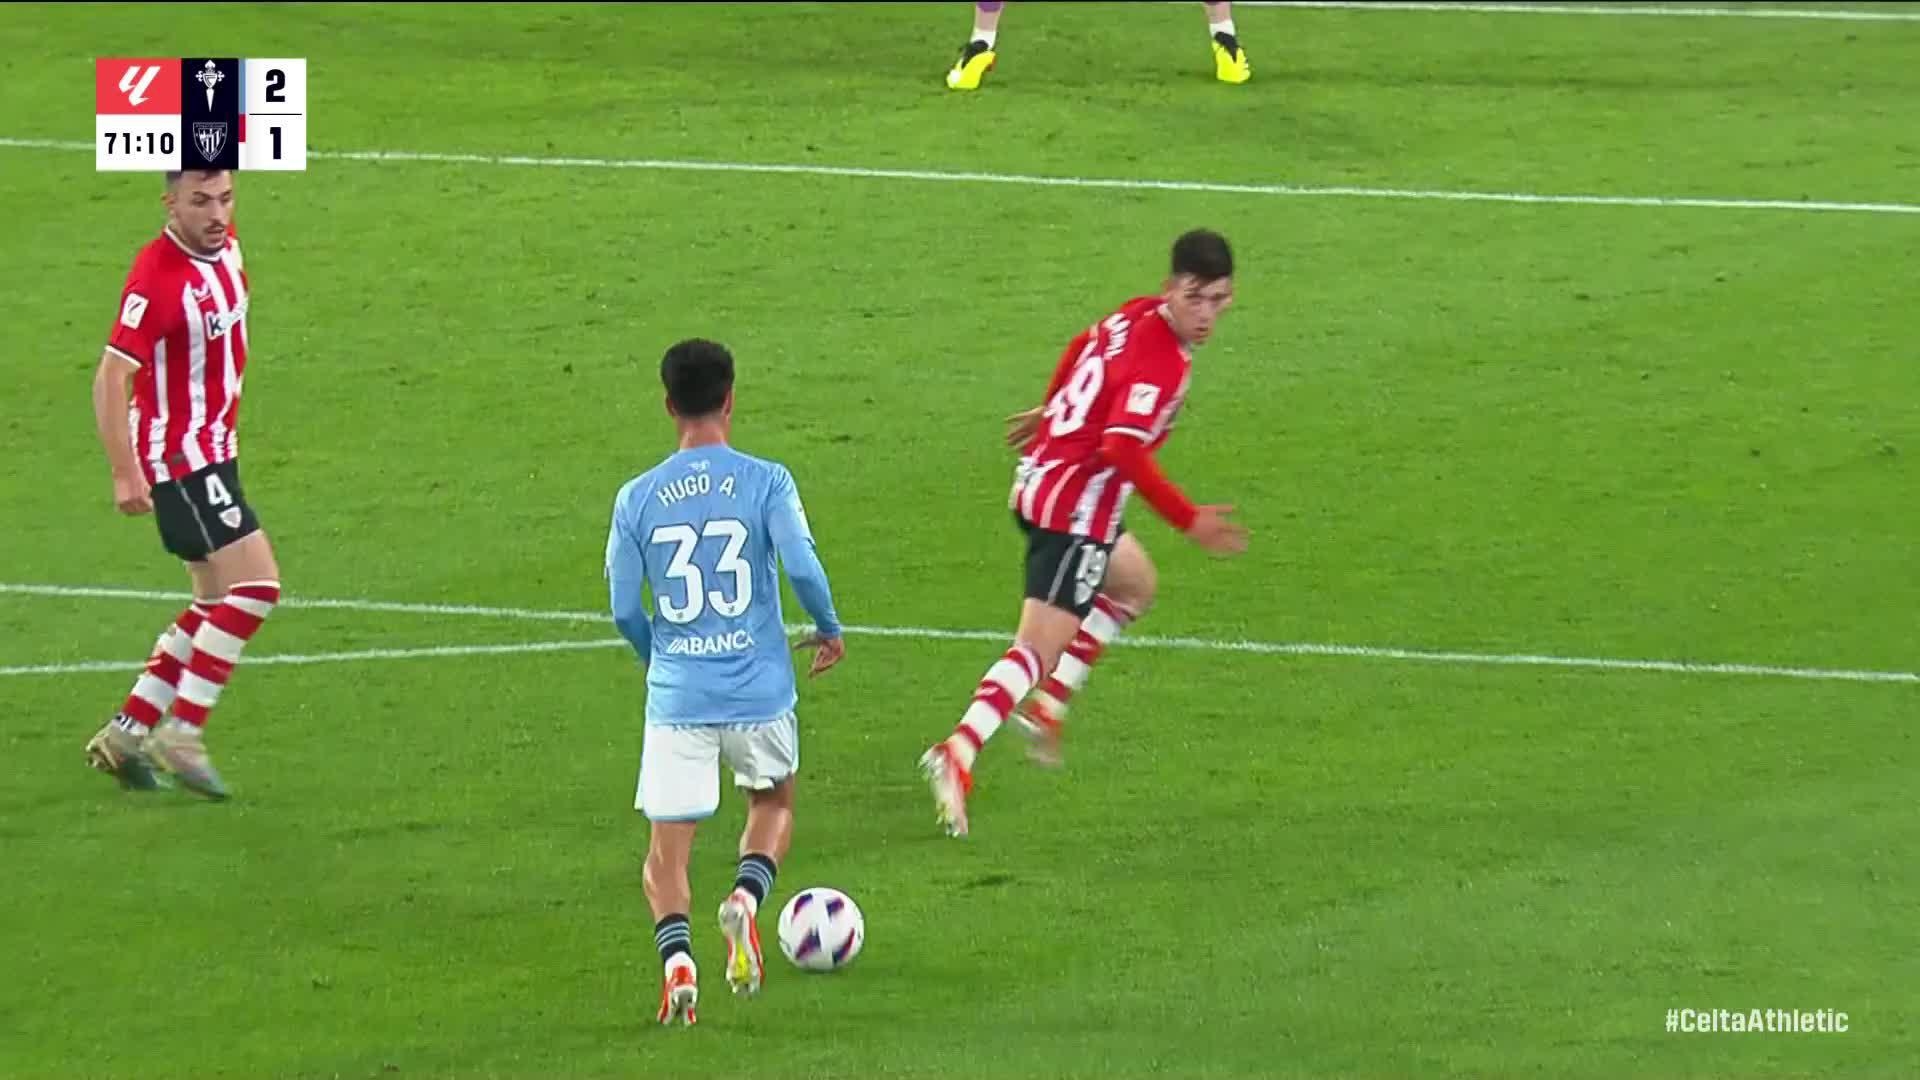 Hugo Álvarez with a Spectacular Goal